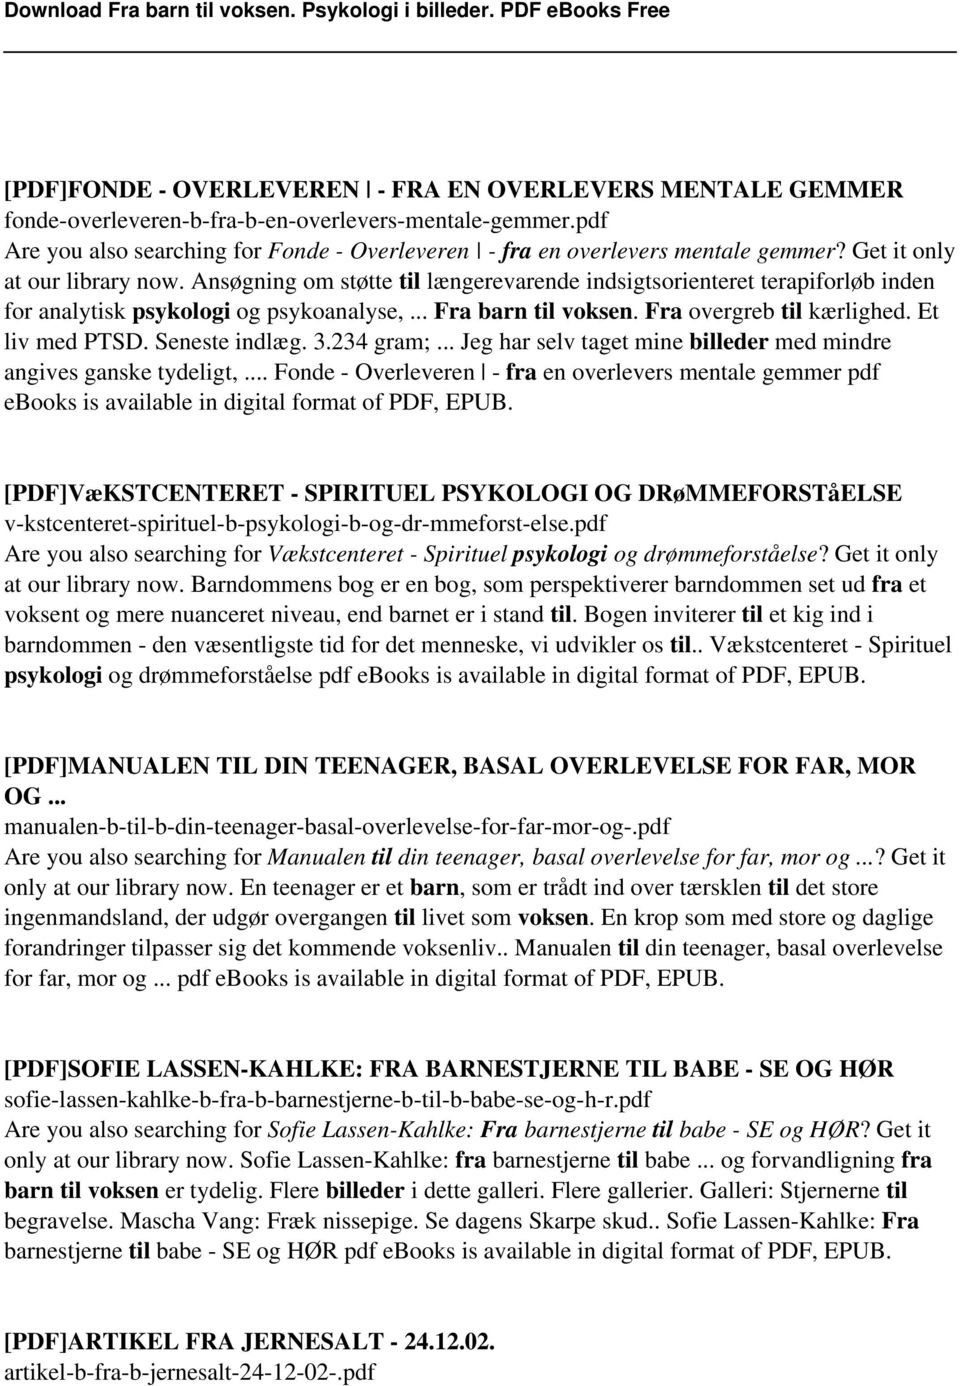 Fra til Psykologi i billeder. PDF PDF Gratis